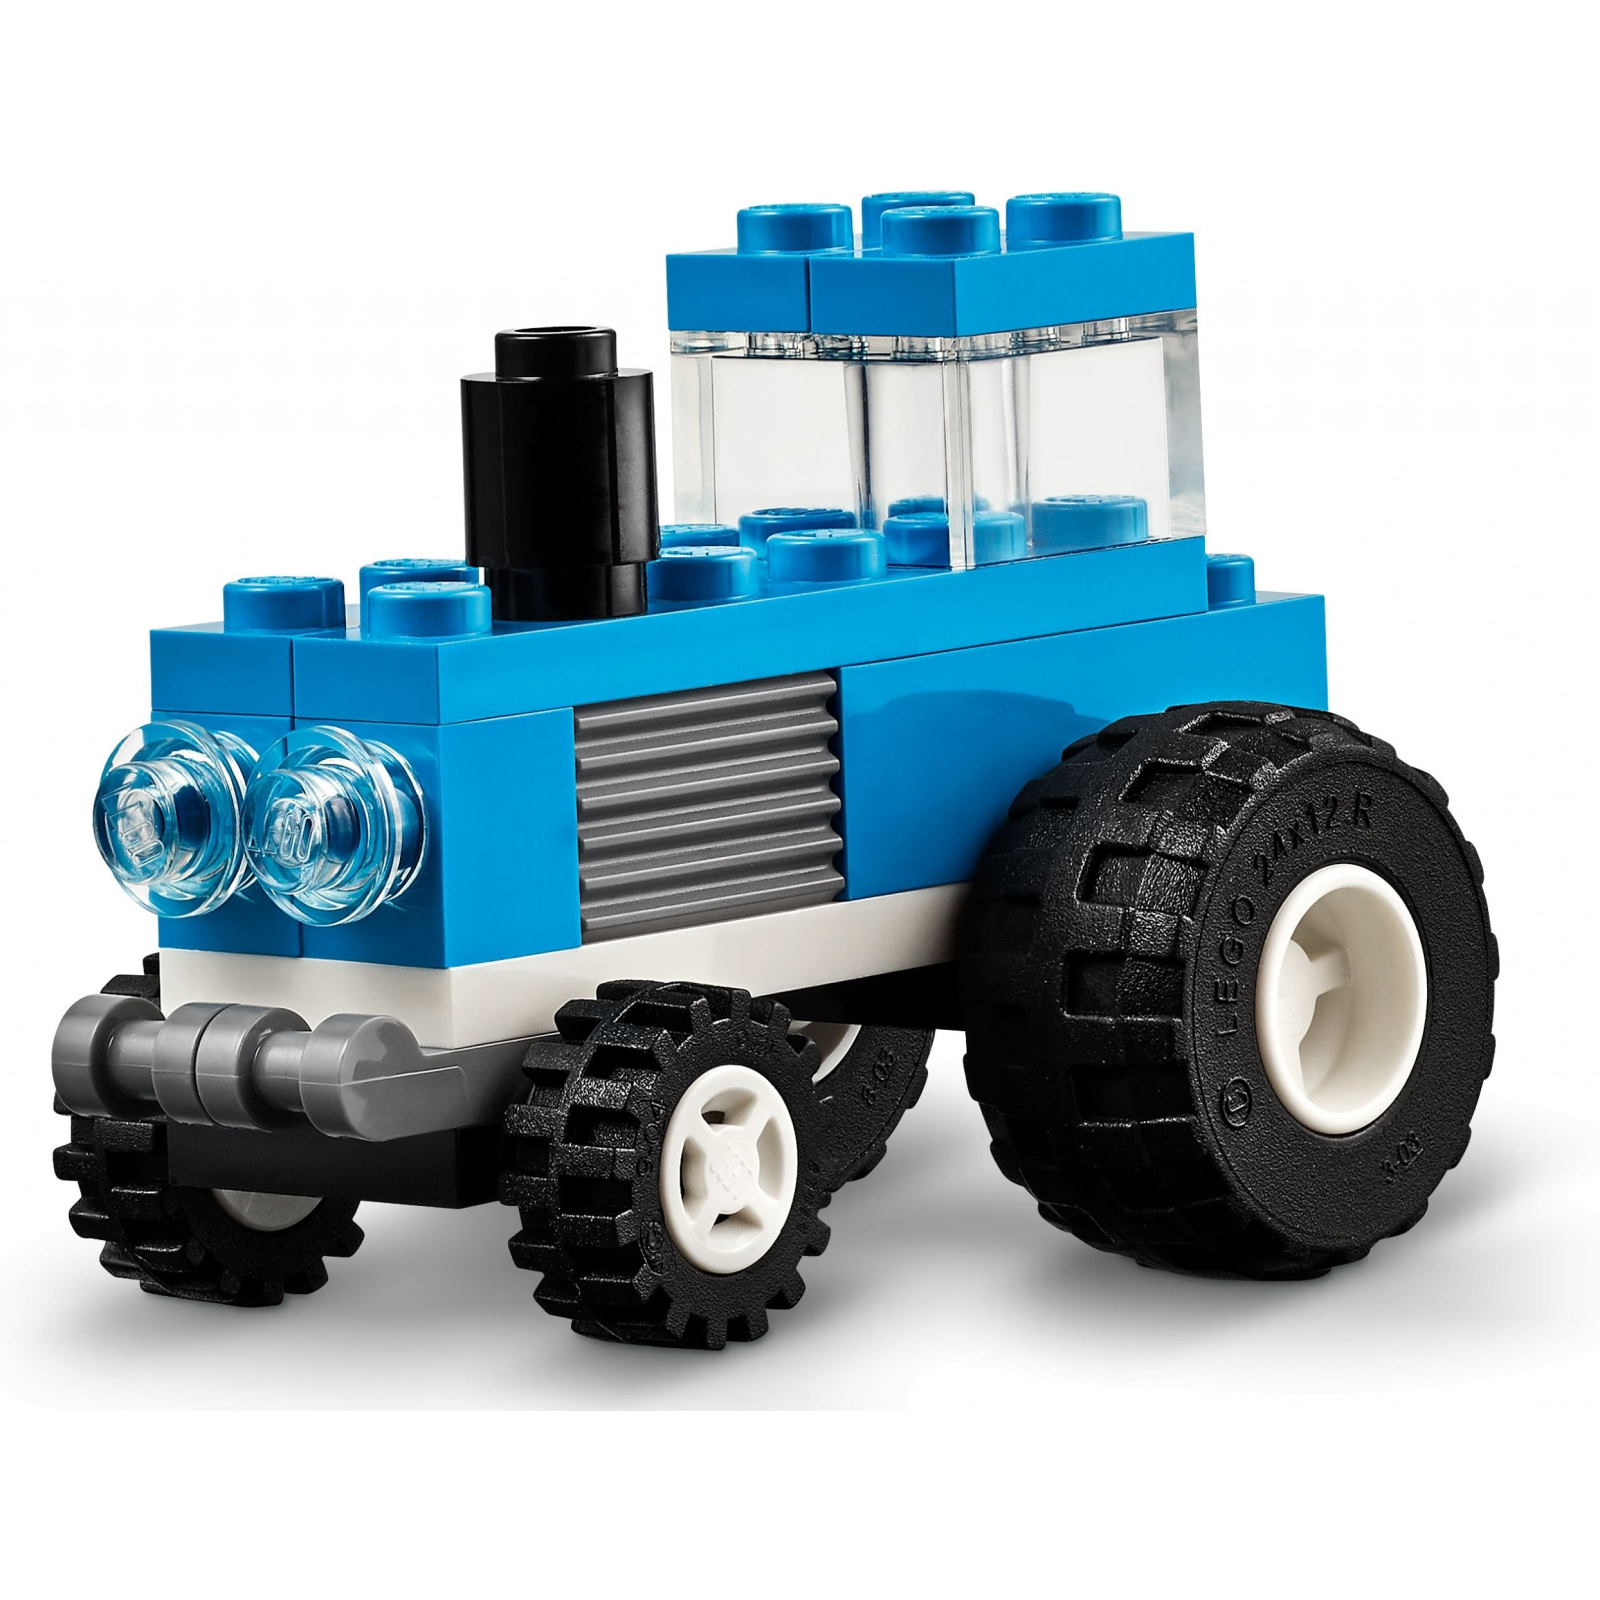 Конструктор LEGO Classic Творческие транспортные средства 900 деталей (11036) изображение 5